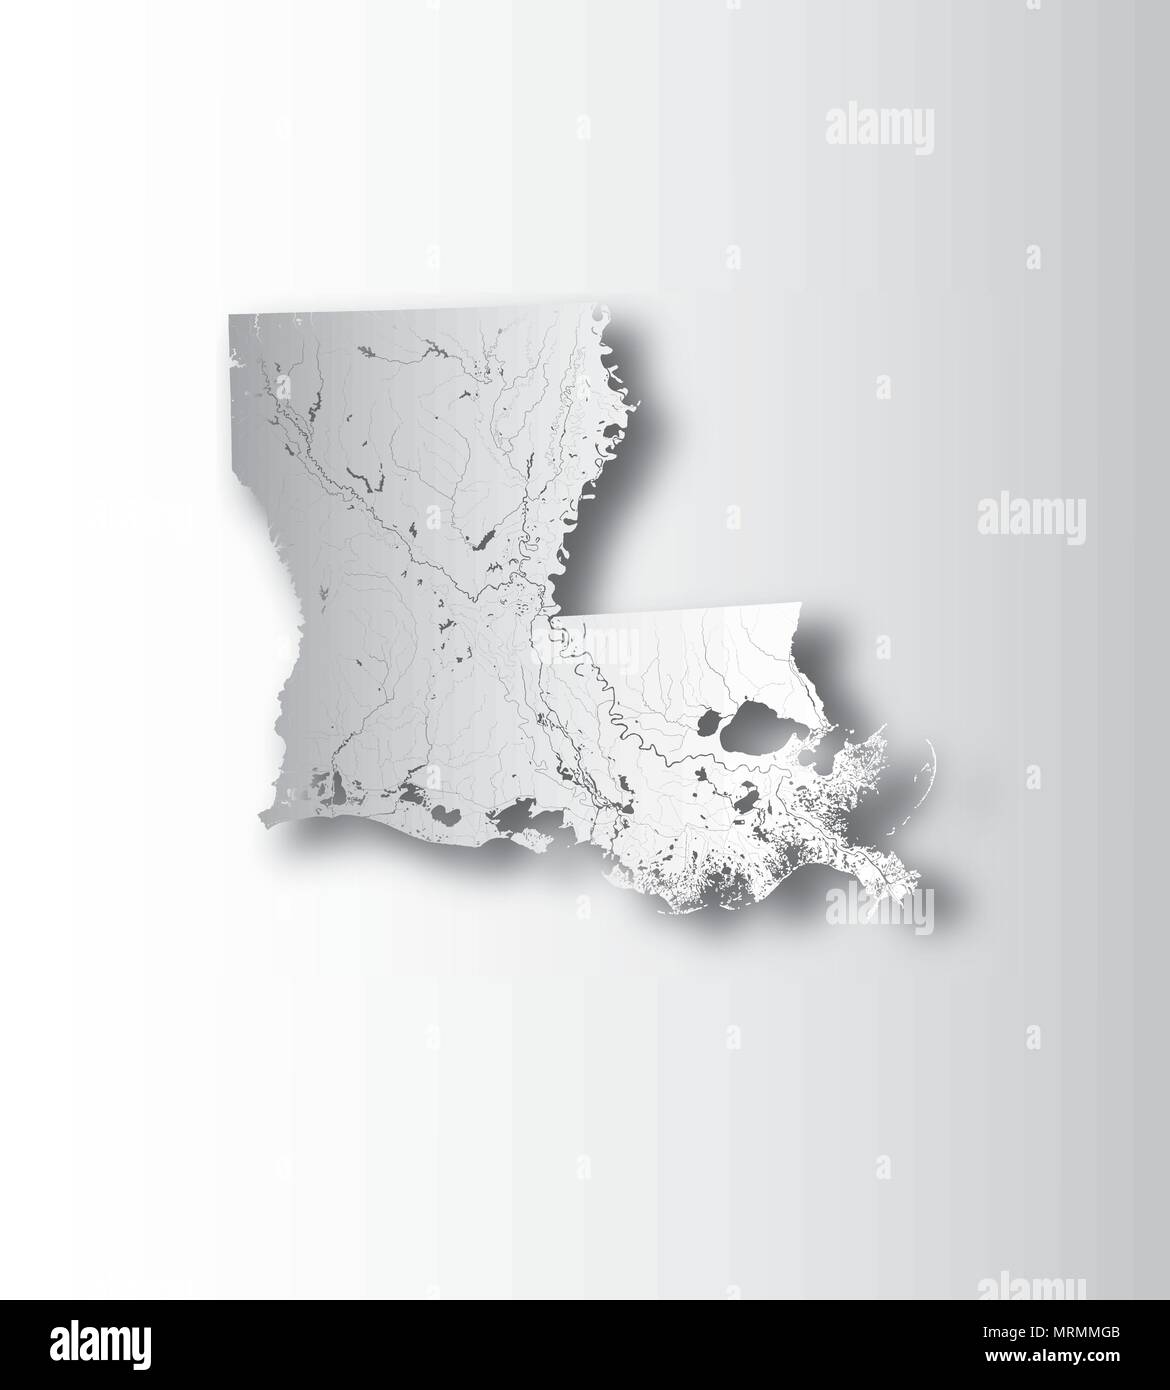 Estados Unidos - mapa de Louisiana, con efecto de papel cortado. Hecho a mano. Los ríos y lagos son mostradas. Por favor mire mis otras imágenes de la serie cartográfica - t Ilustración del Vector